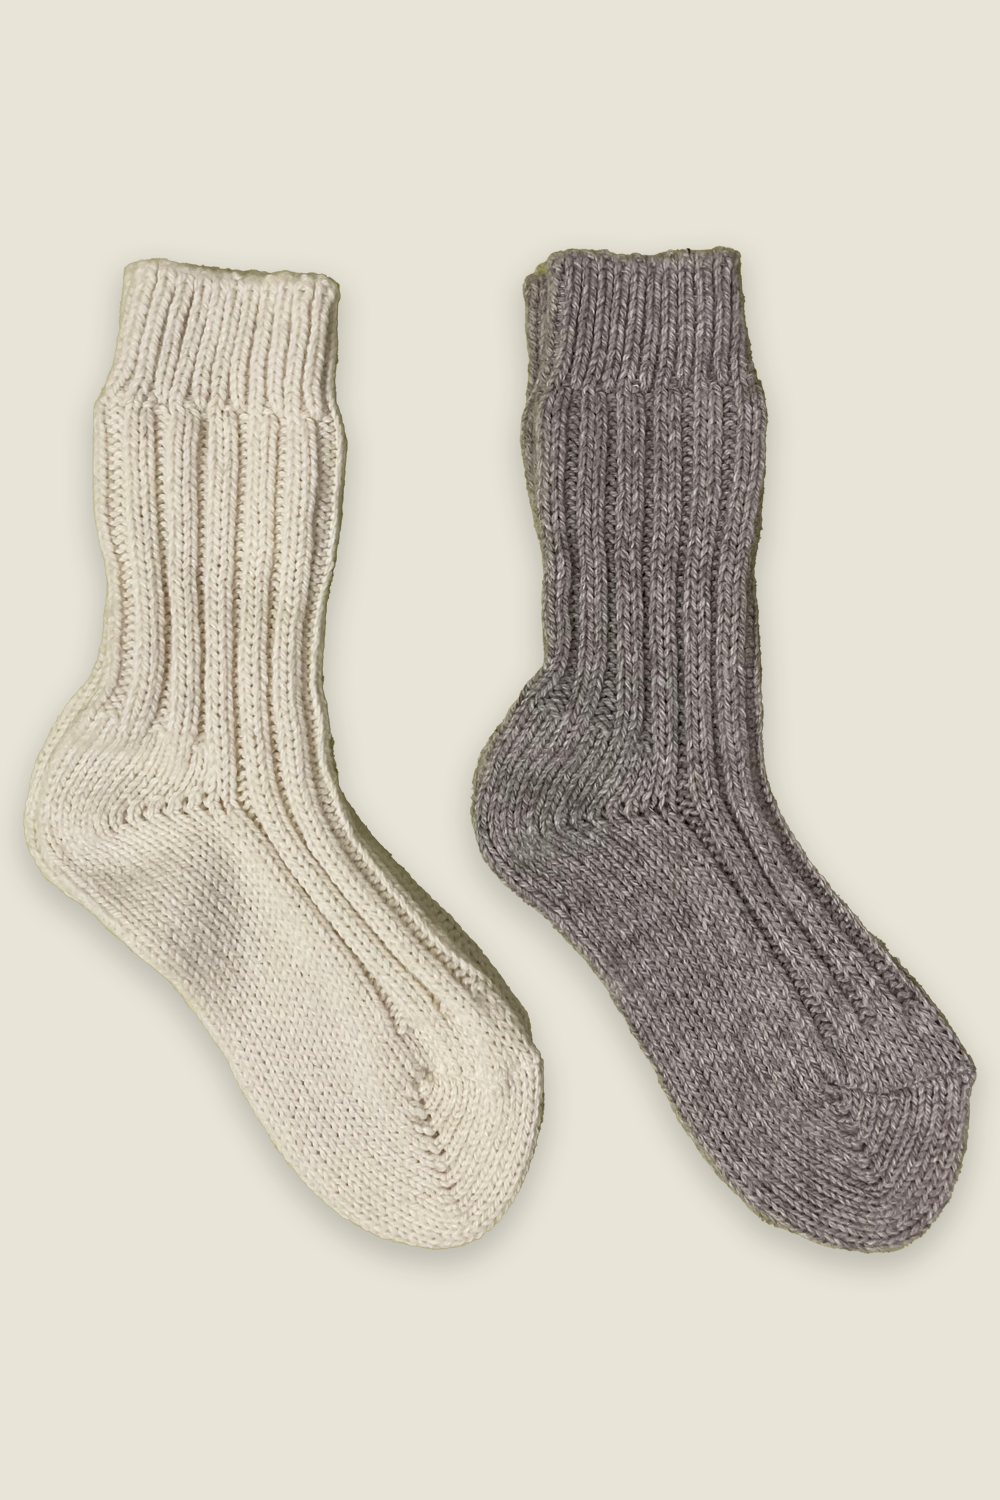 Chaussettes en alpaga - naturelles et grises - 2 paires